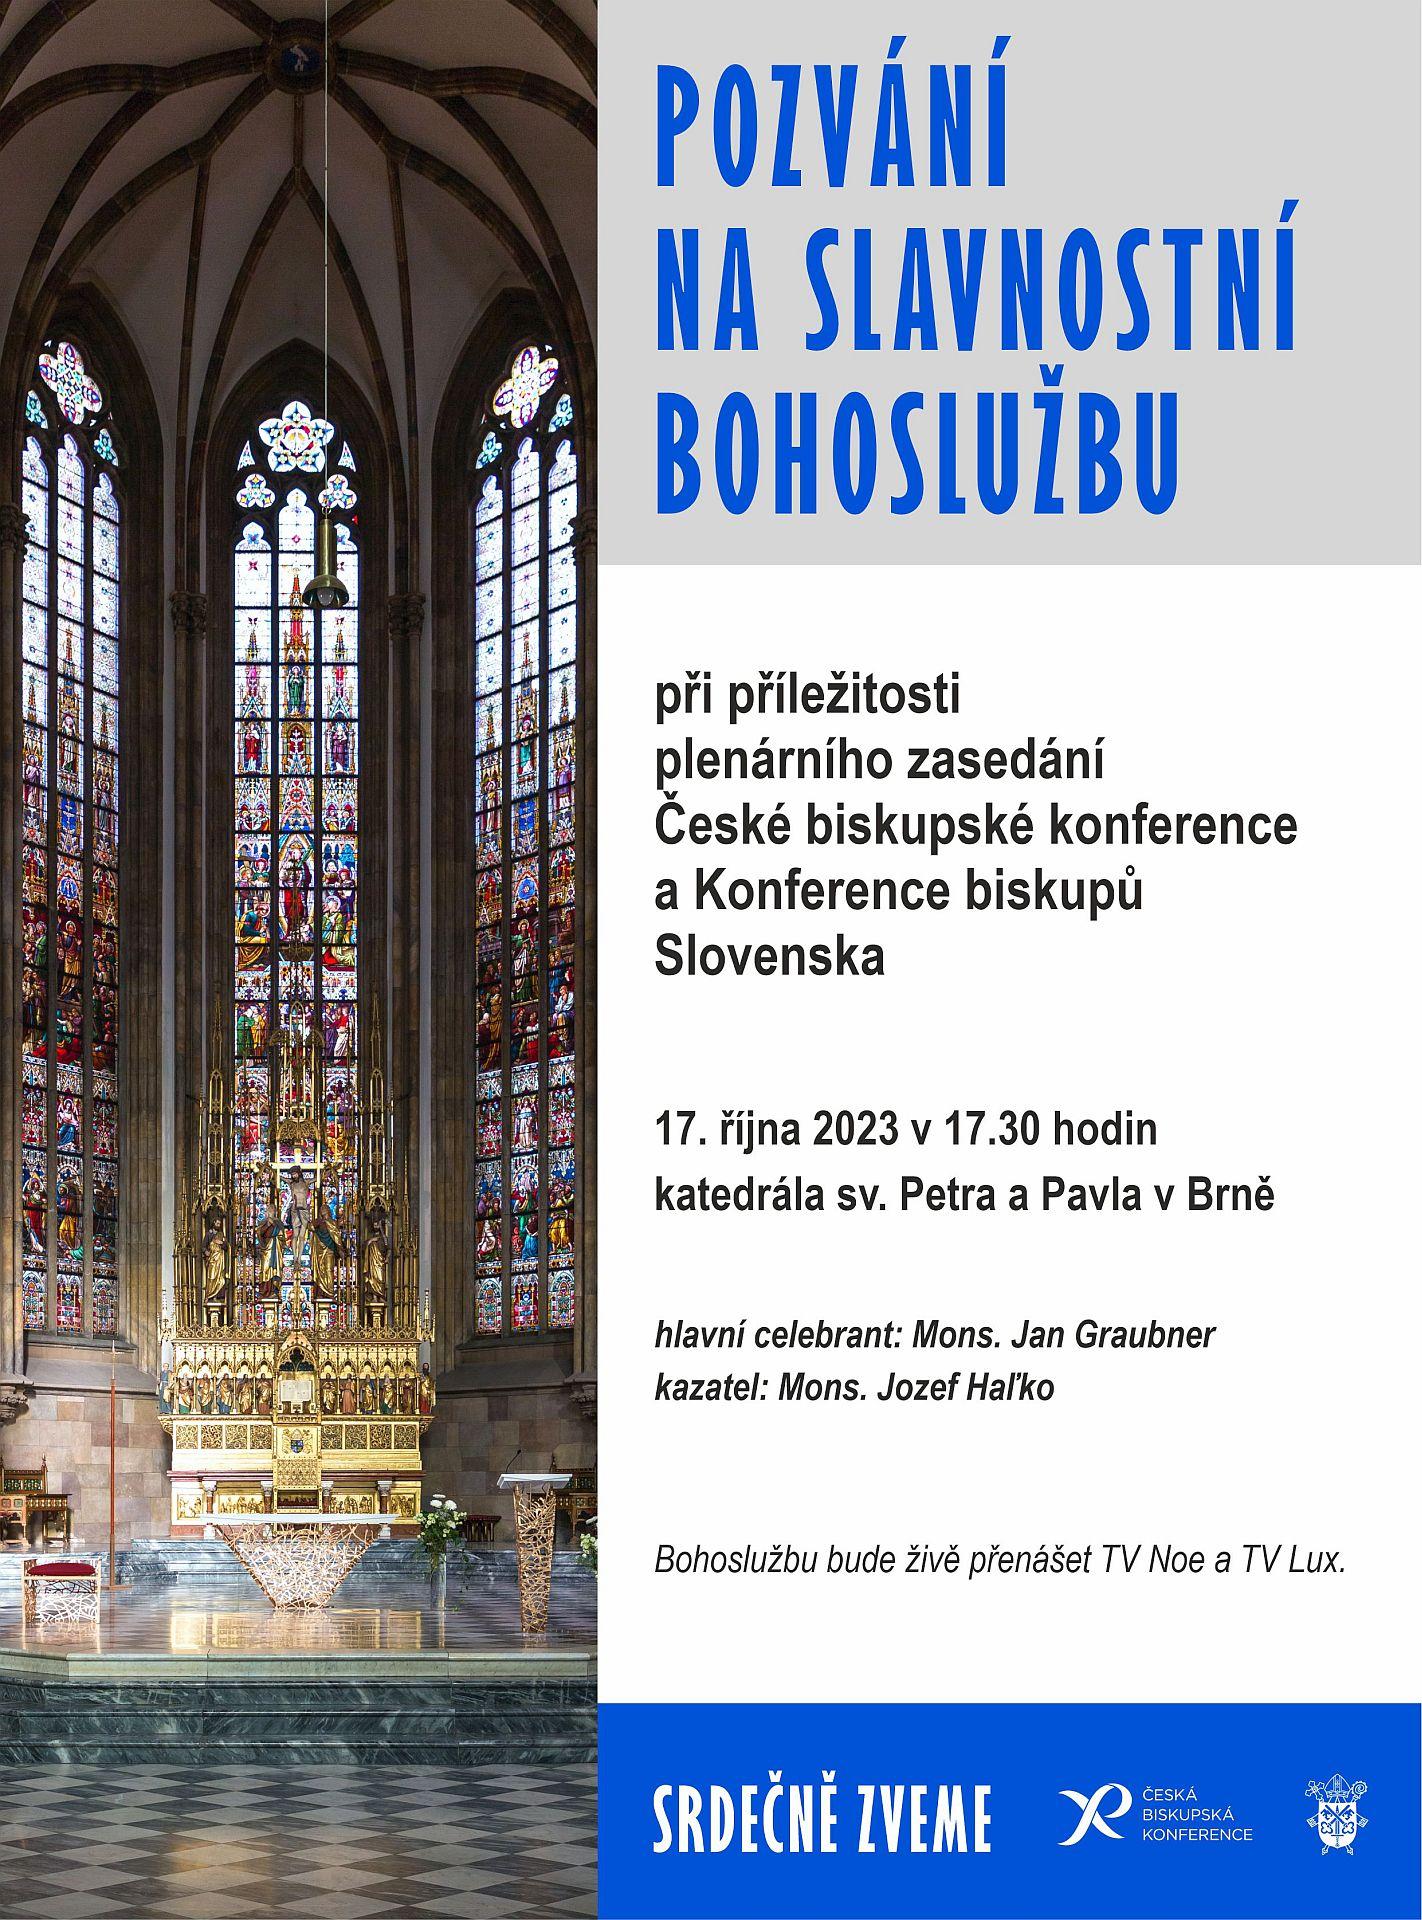 Brno, katedrala, omsa, biskupi, KBS, CBK, plagat